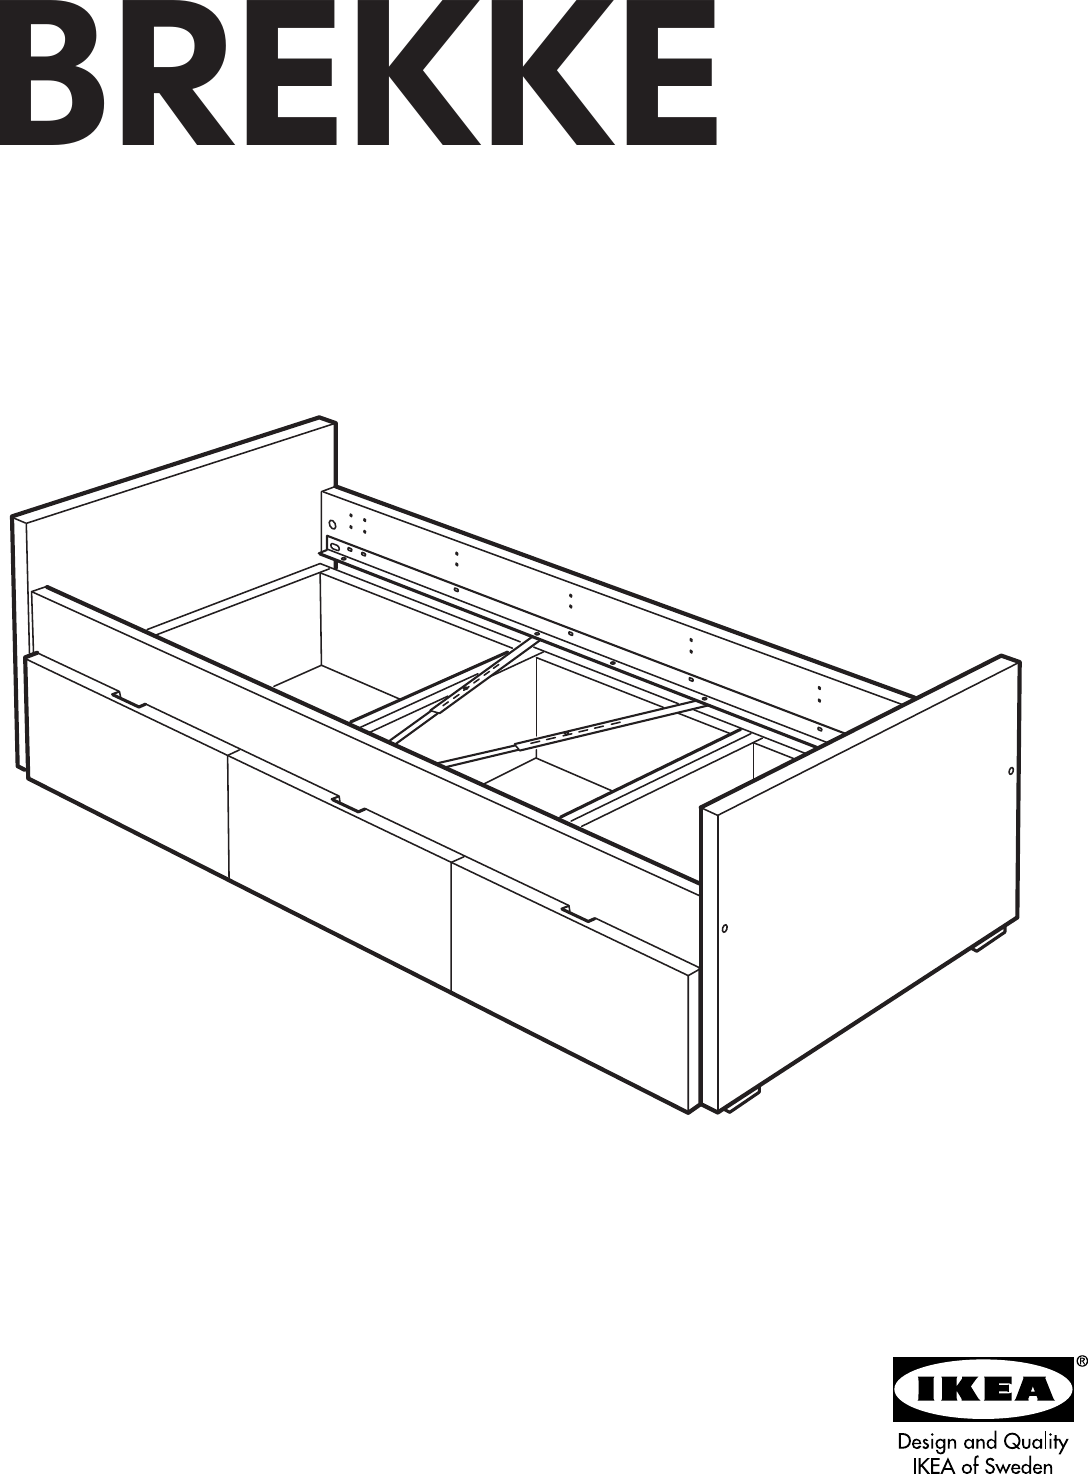 Ikea Brekke Twin Bed W Storage Assembly, Ikea Long Twin Bed